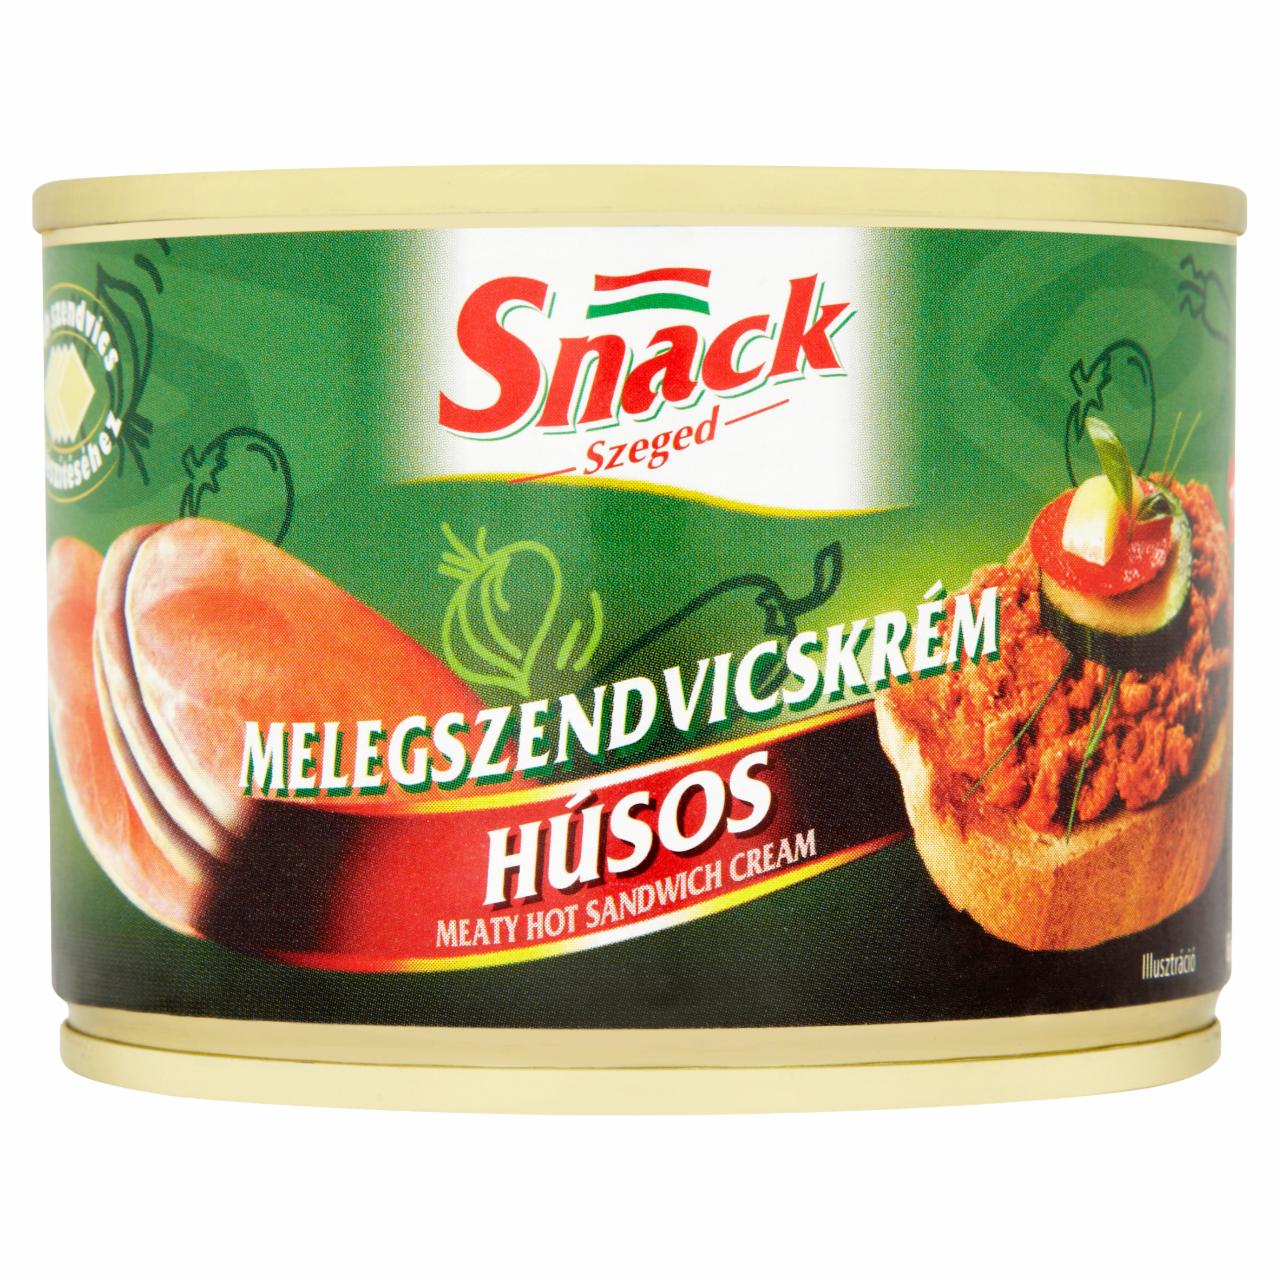 Képek - Snack Szeged húsos melegszendvicskrém 190 g